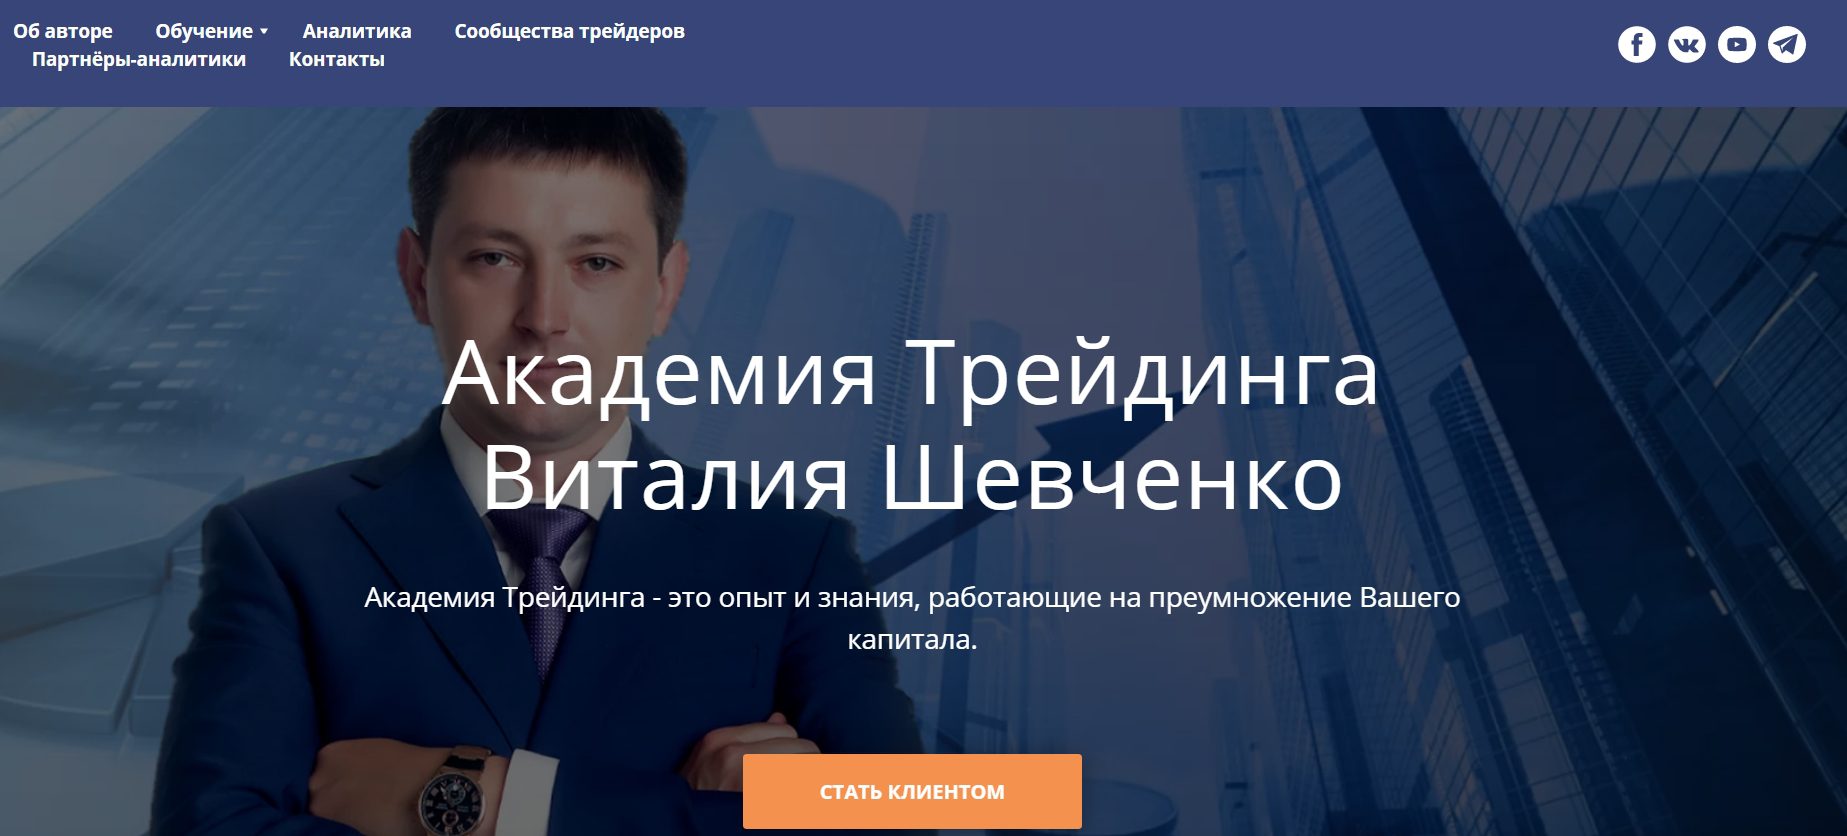 Официальный сайт Виталия Шевченко